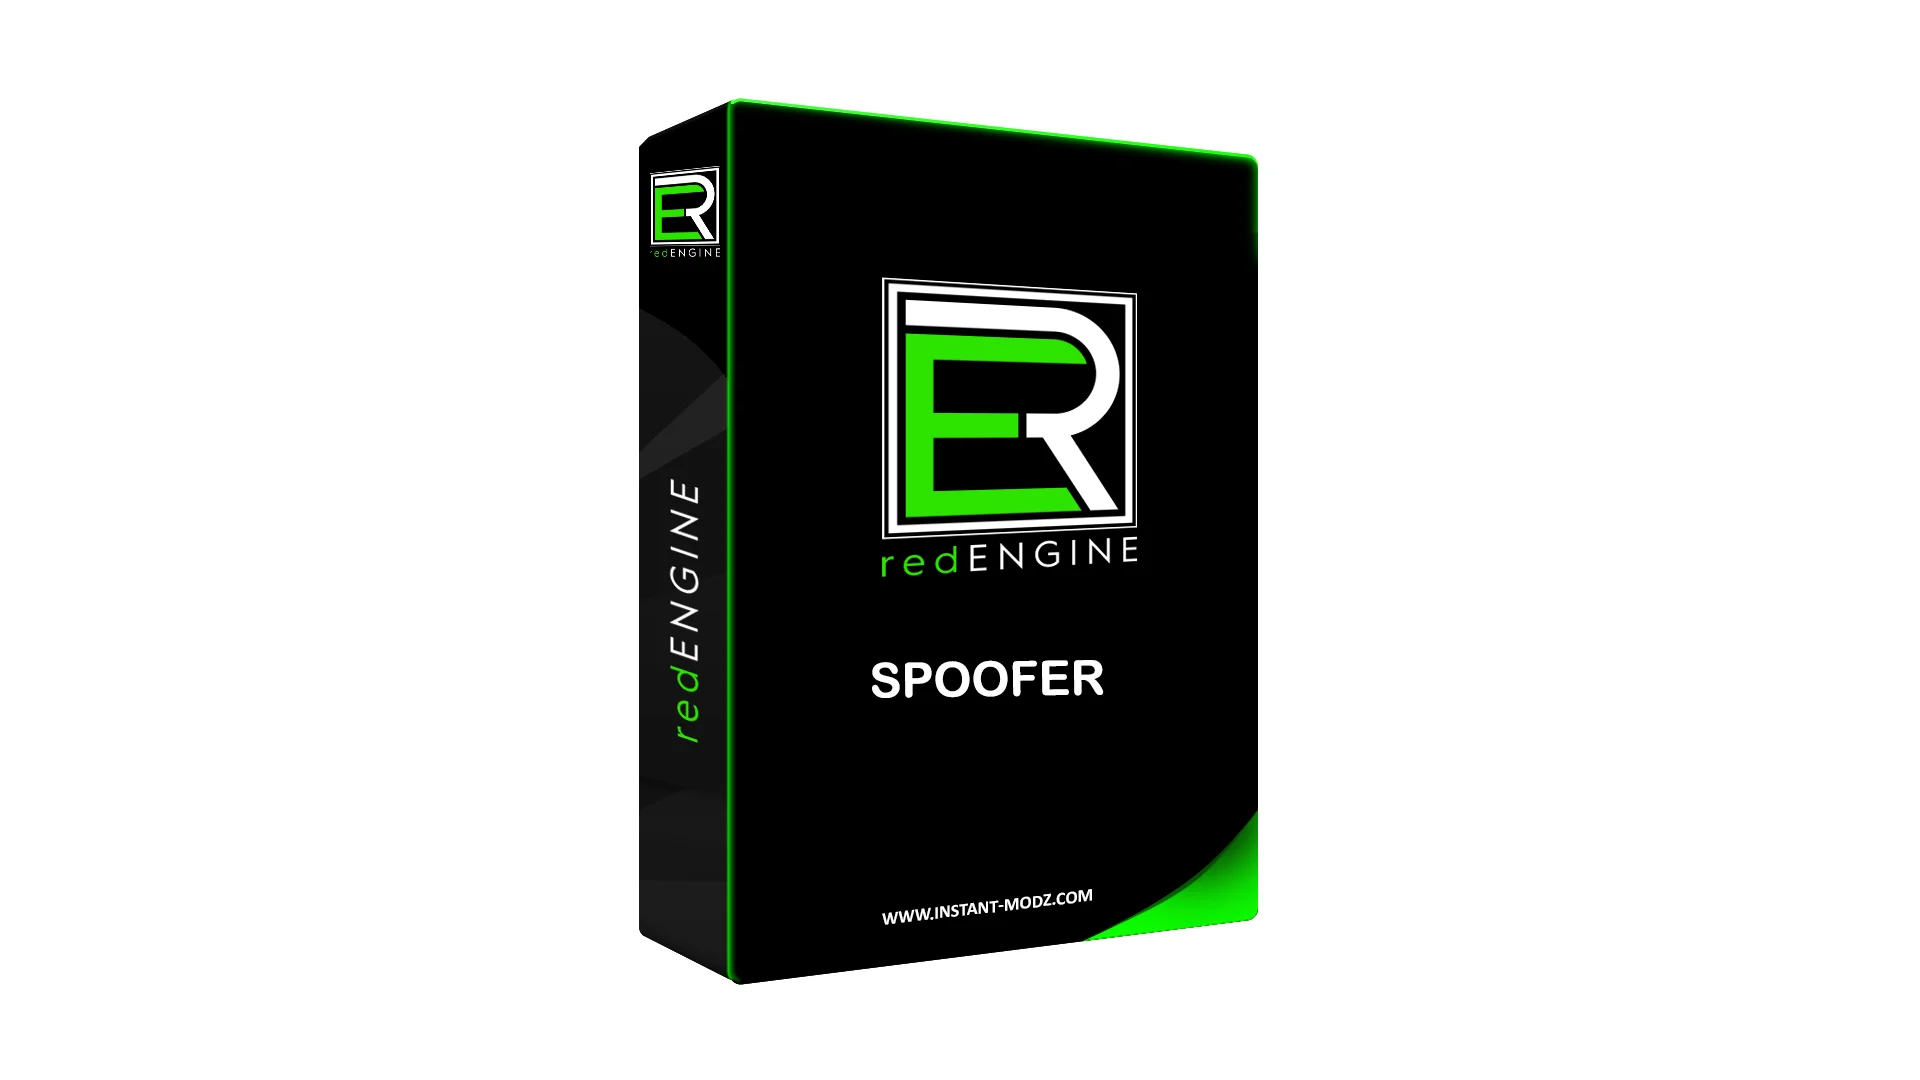 redENGINE FiveM How to use Spoofer 